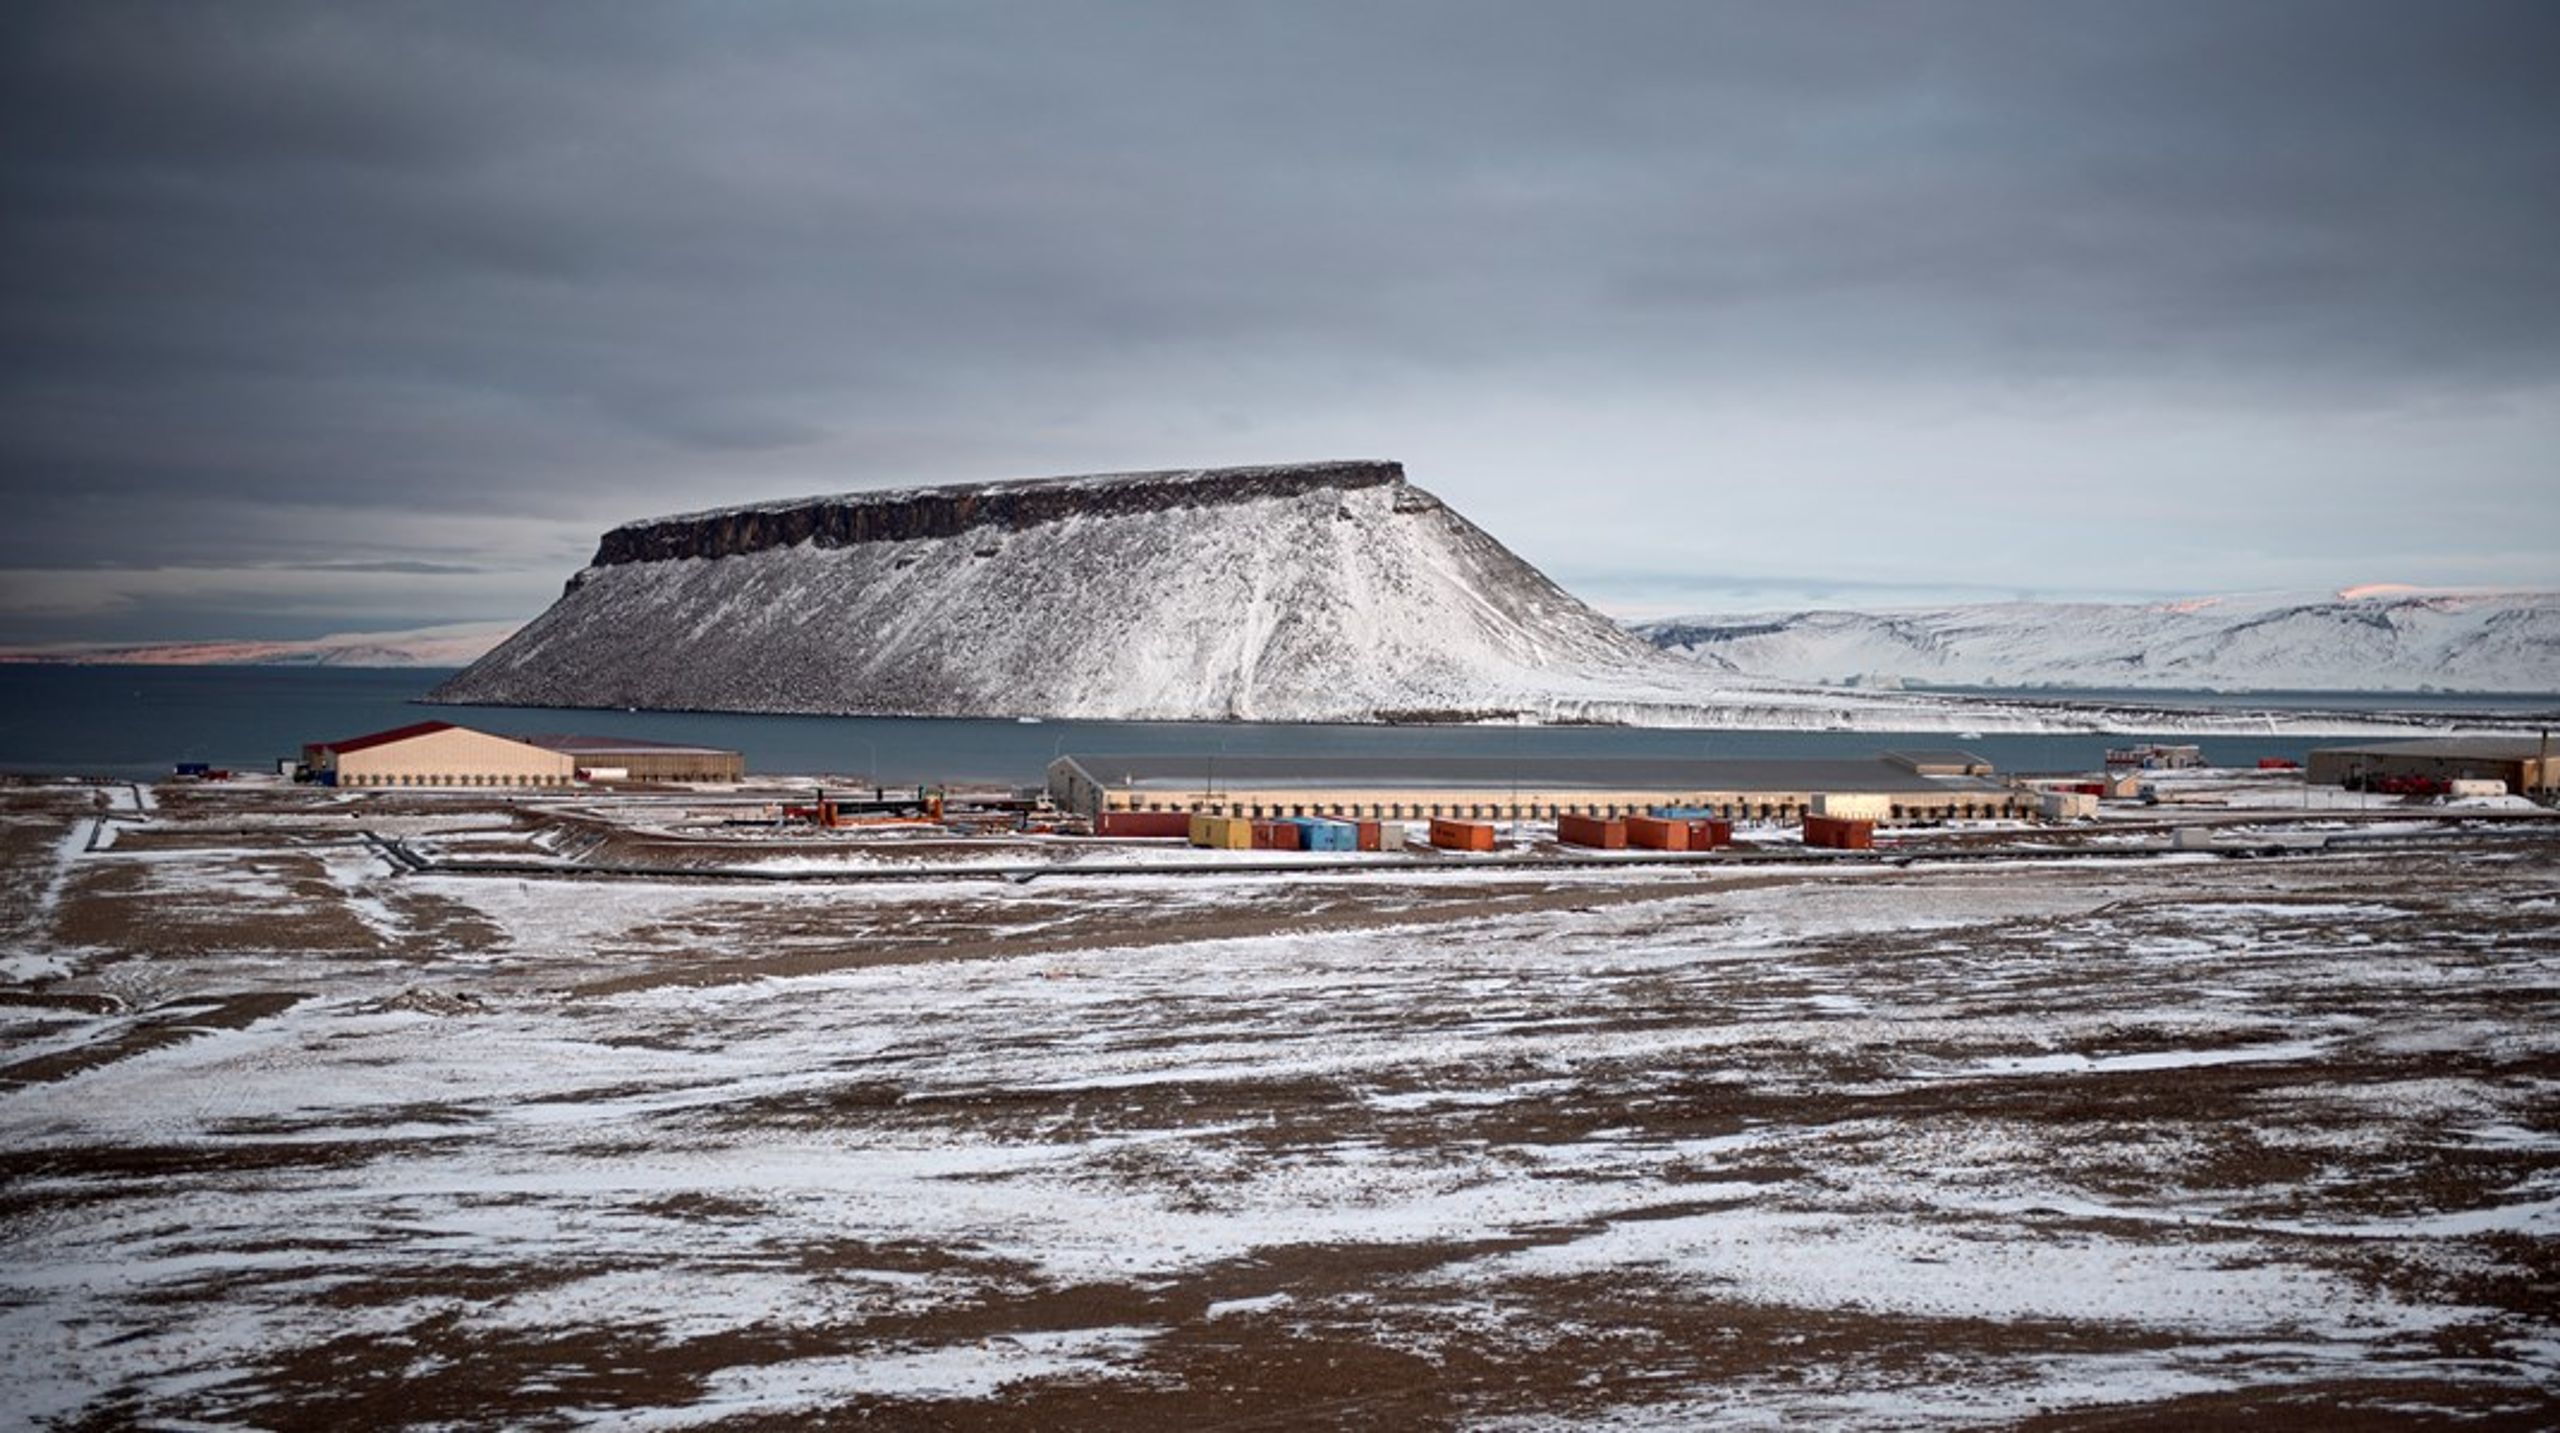 Det ser ud til, at det bliver vanskeligere at holde verdens konflikter ude af det arktiske samarbejde,&nbsp;skriver&nbsp;Rasmus Leander Nielsen og Jeppe Strandsbjerg.